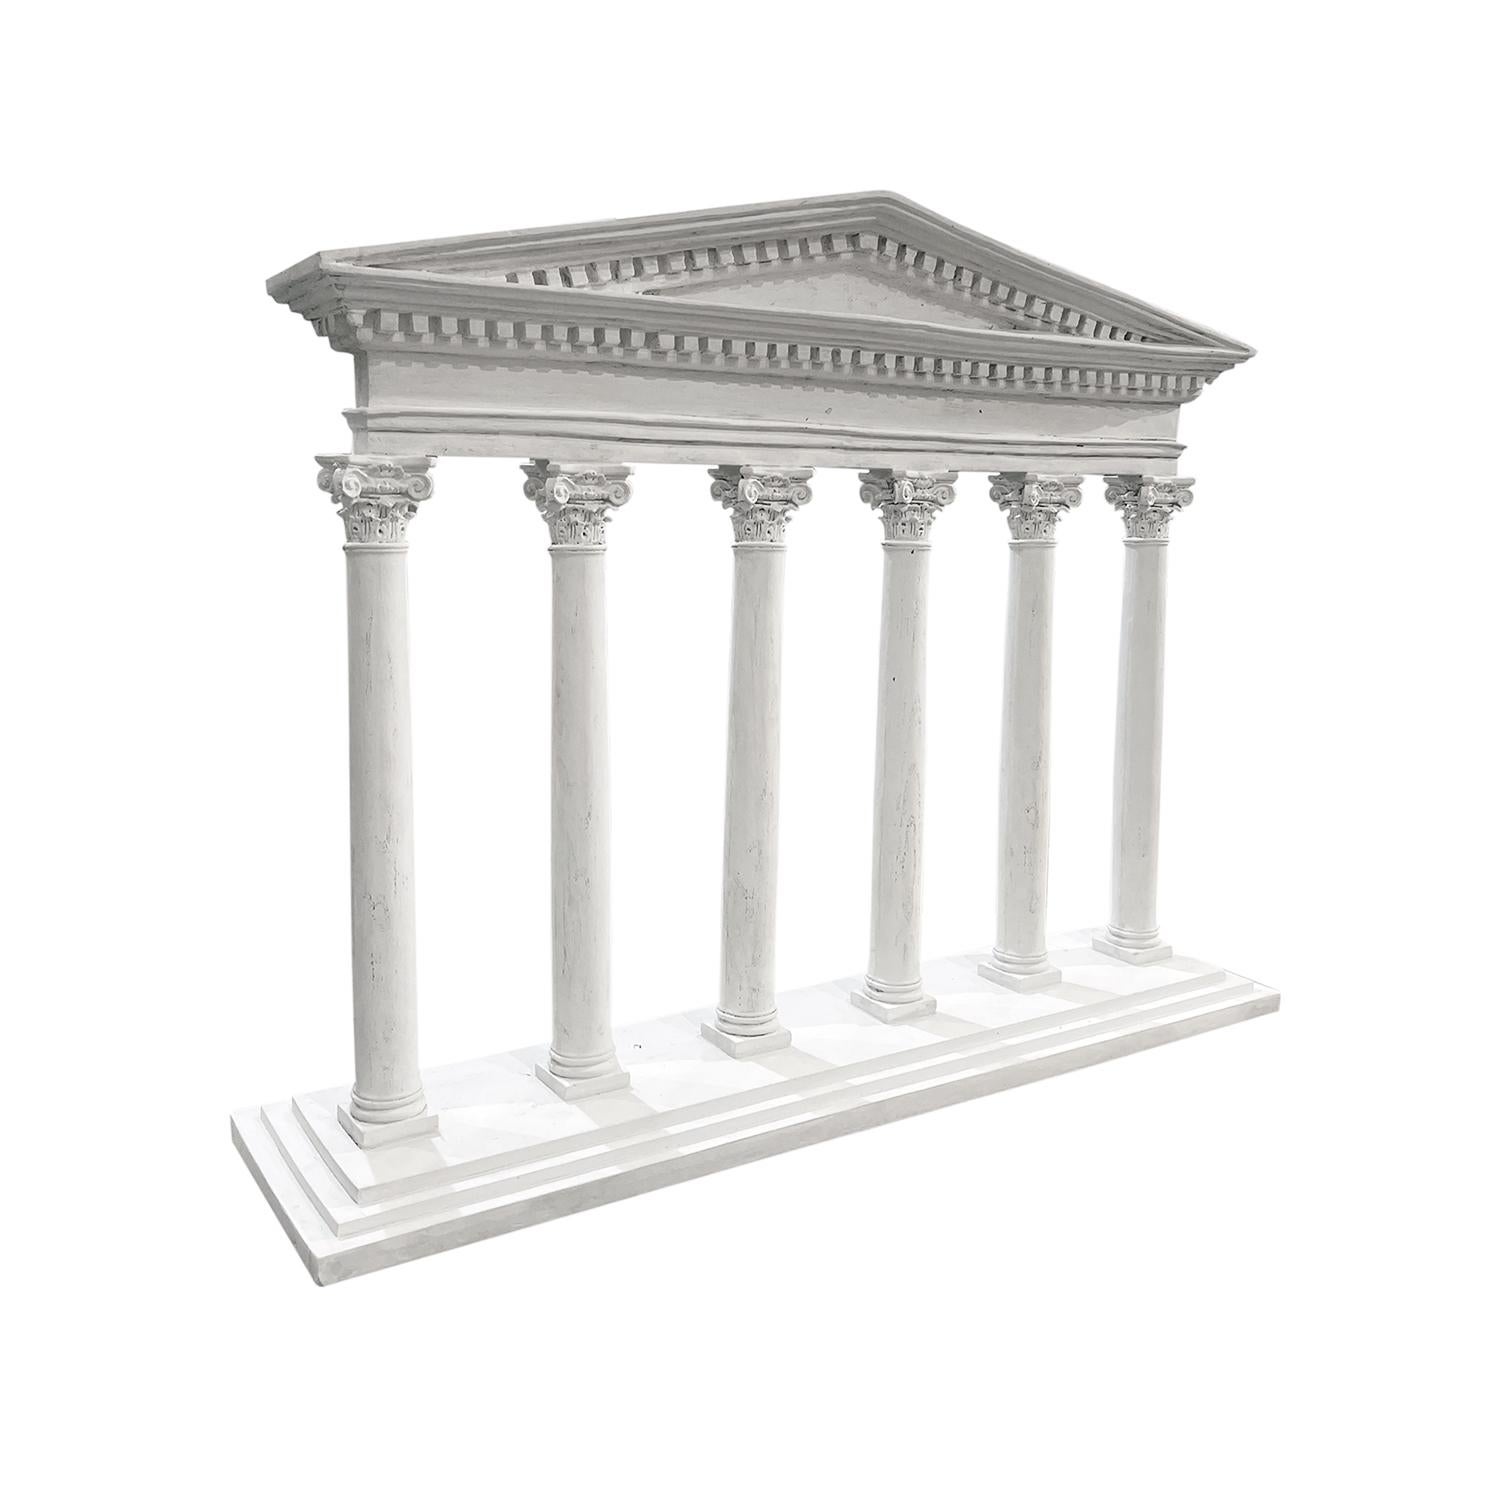 Cette maquette architecturale vintage d'un temple romain antique avec des chapiteaux corinthiens est réalisée à la main en plâtre français. Le modèle représente la façade d'un temple classique avec des colonnes, des chapiteaux et un fronton